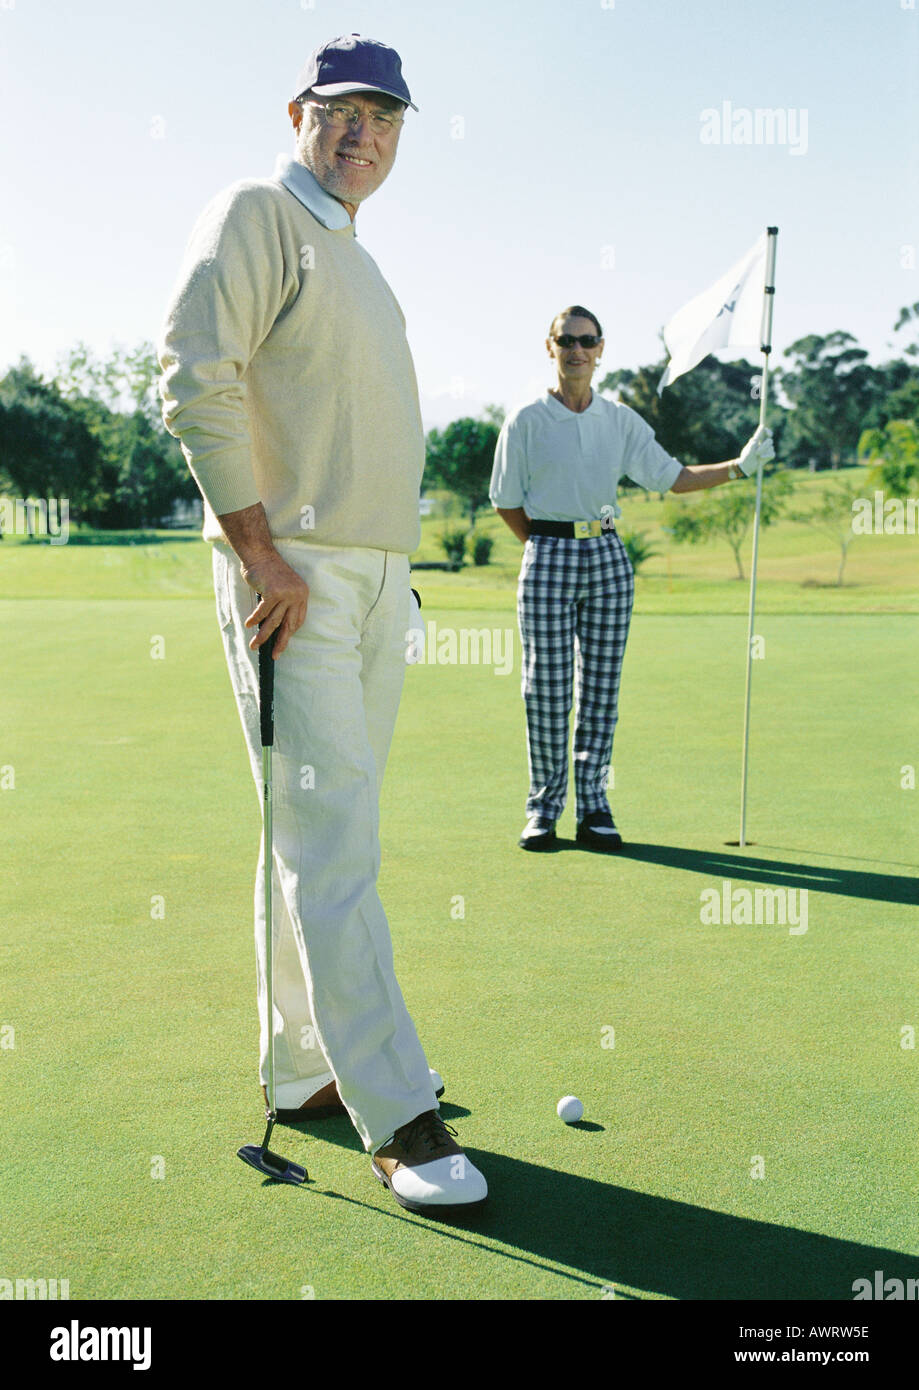 Deux golfeurs mature sur vert, portrait Banque D'Images